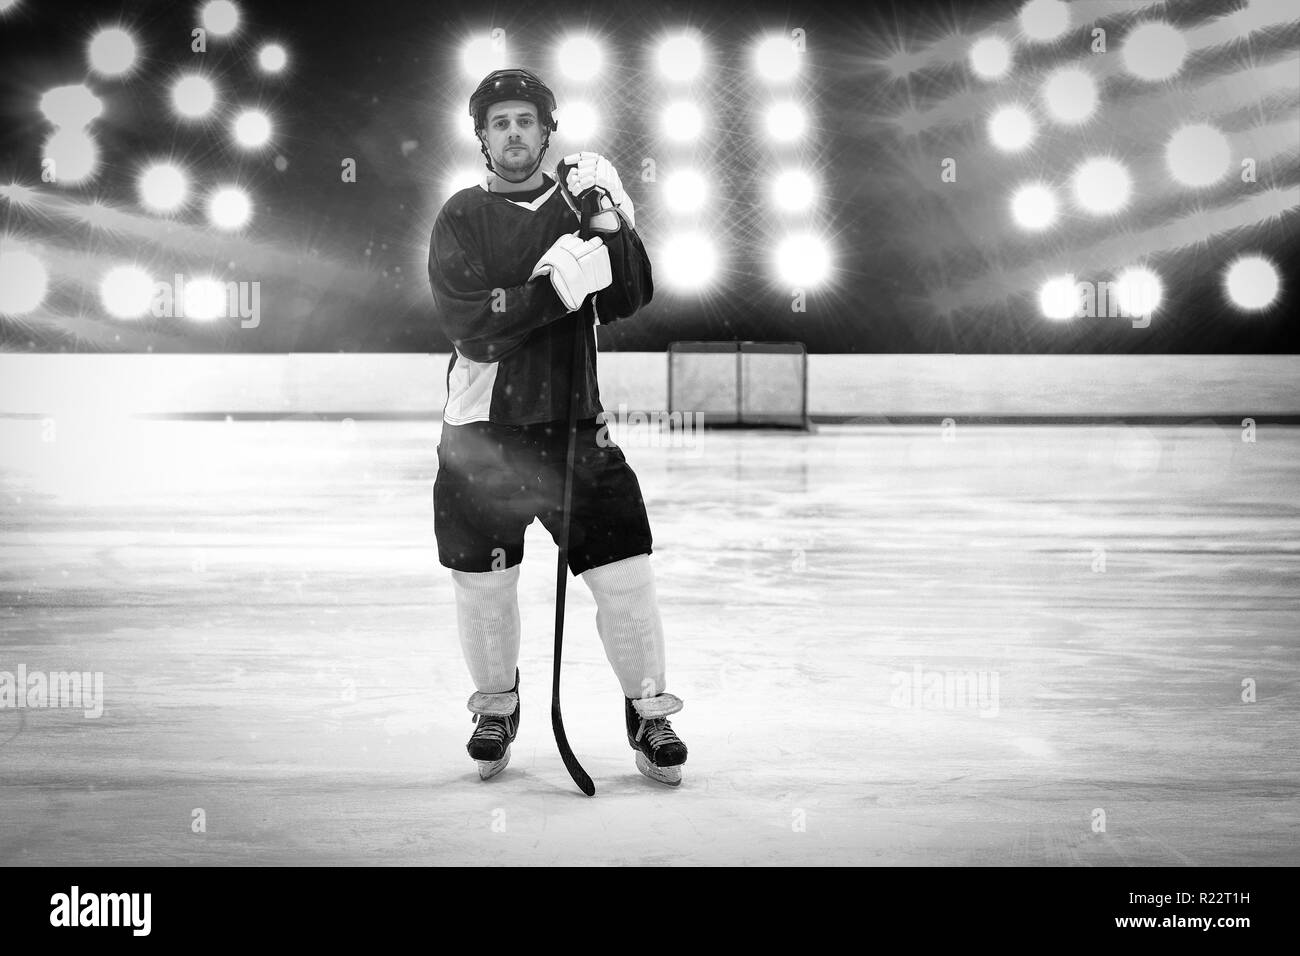 Immagine composita del giocatore di hockey con la mazza da hockey in piedi sul ghiaccio Foto Stock